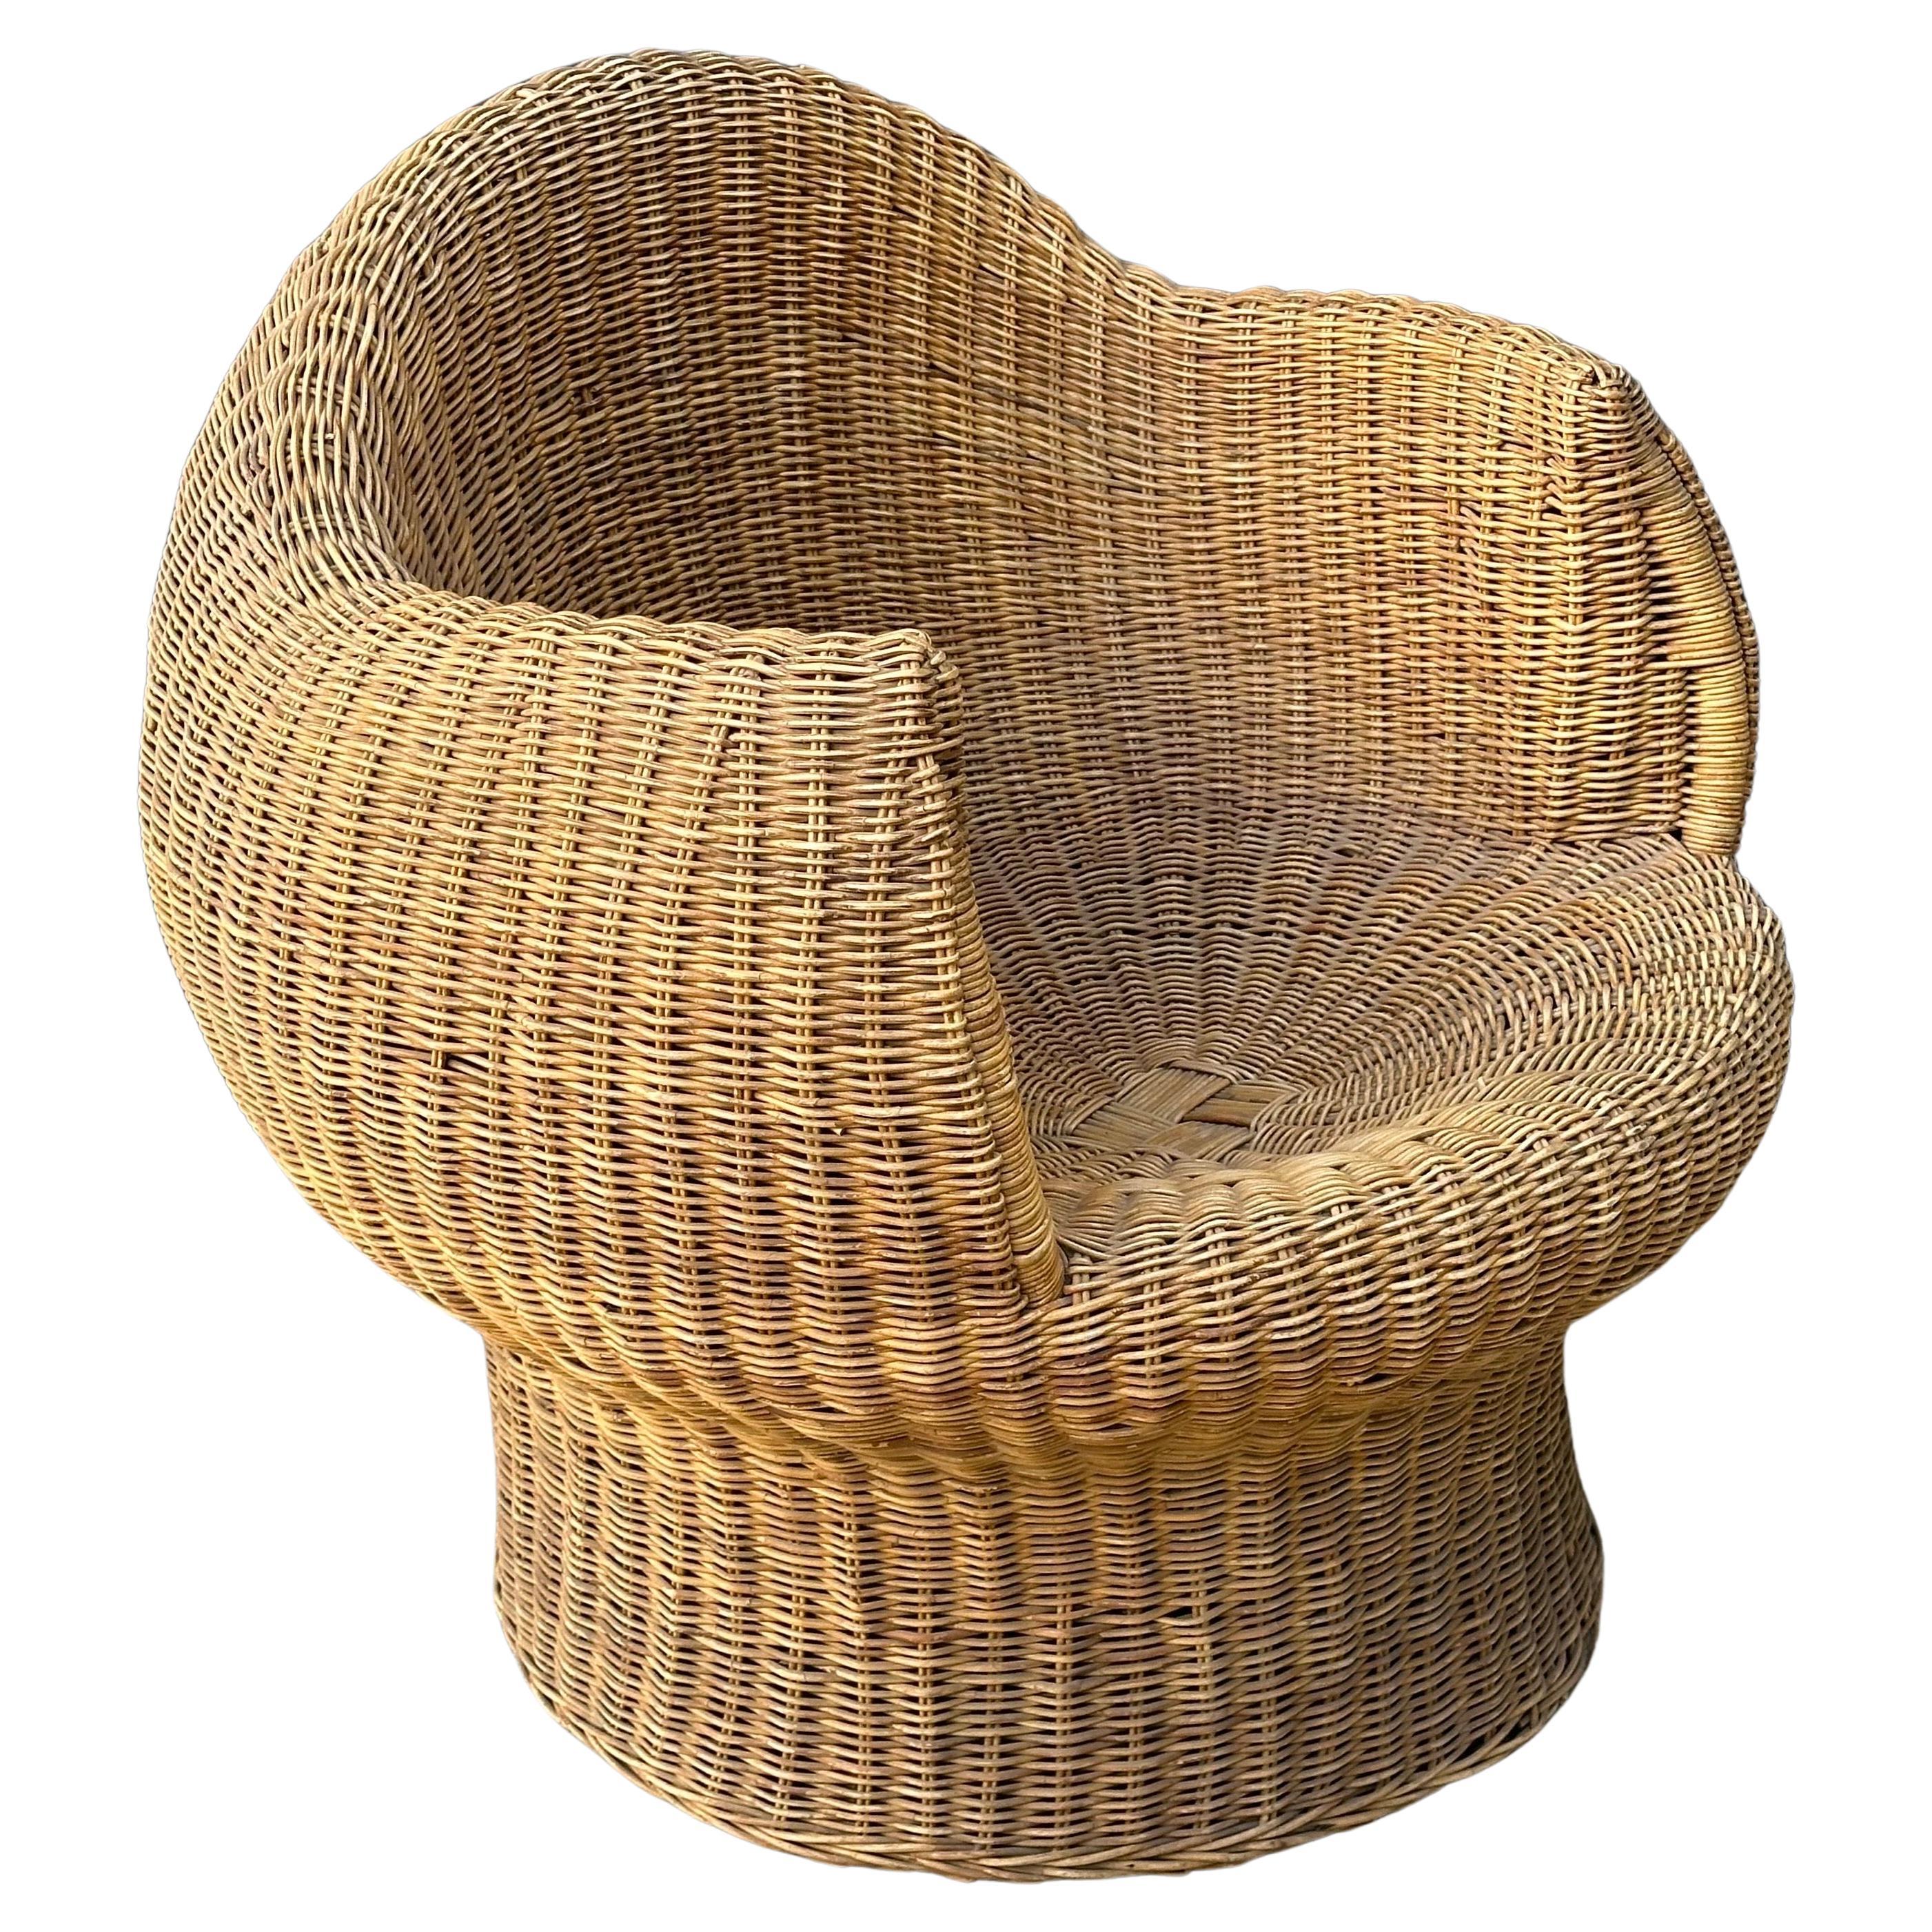 Une fantastique chaise sculpturale en osier de style 